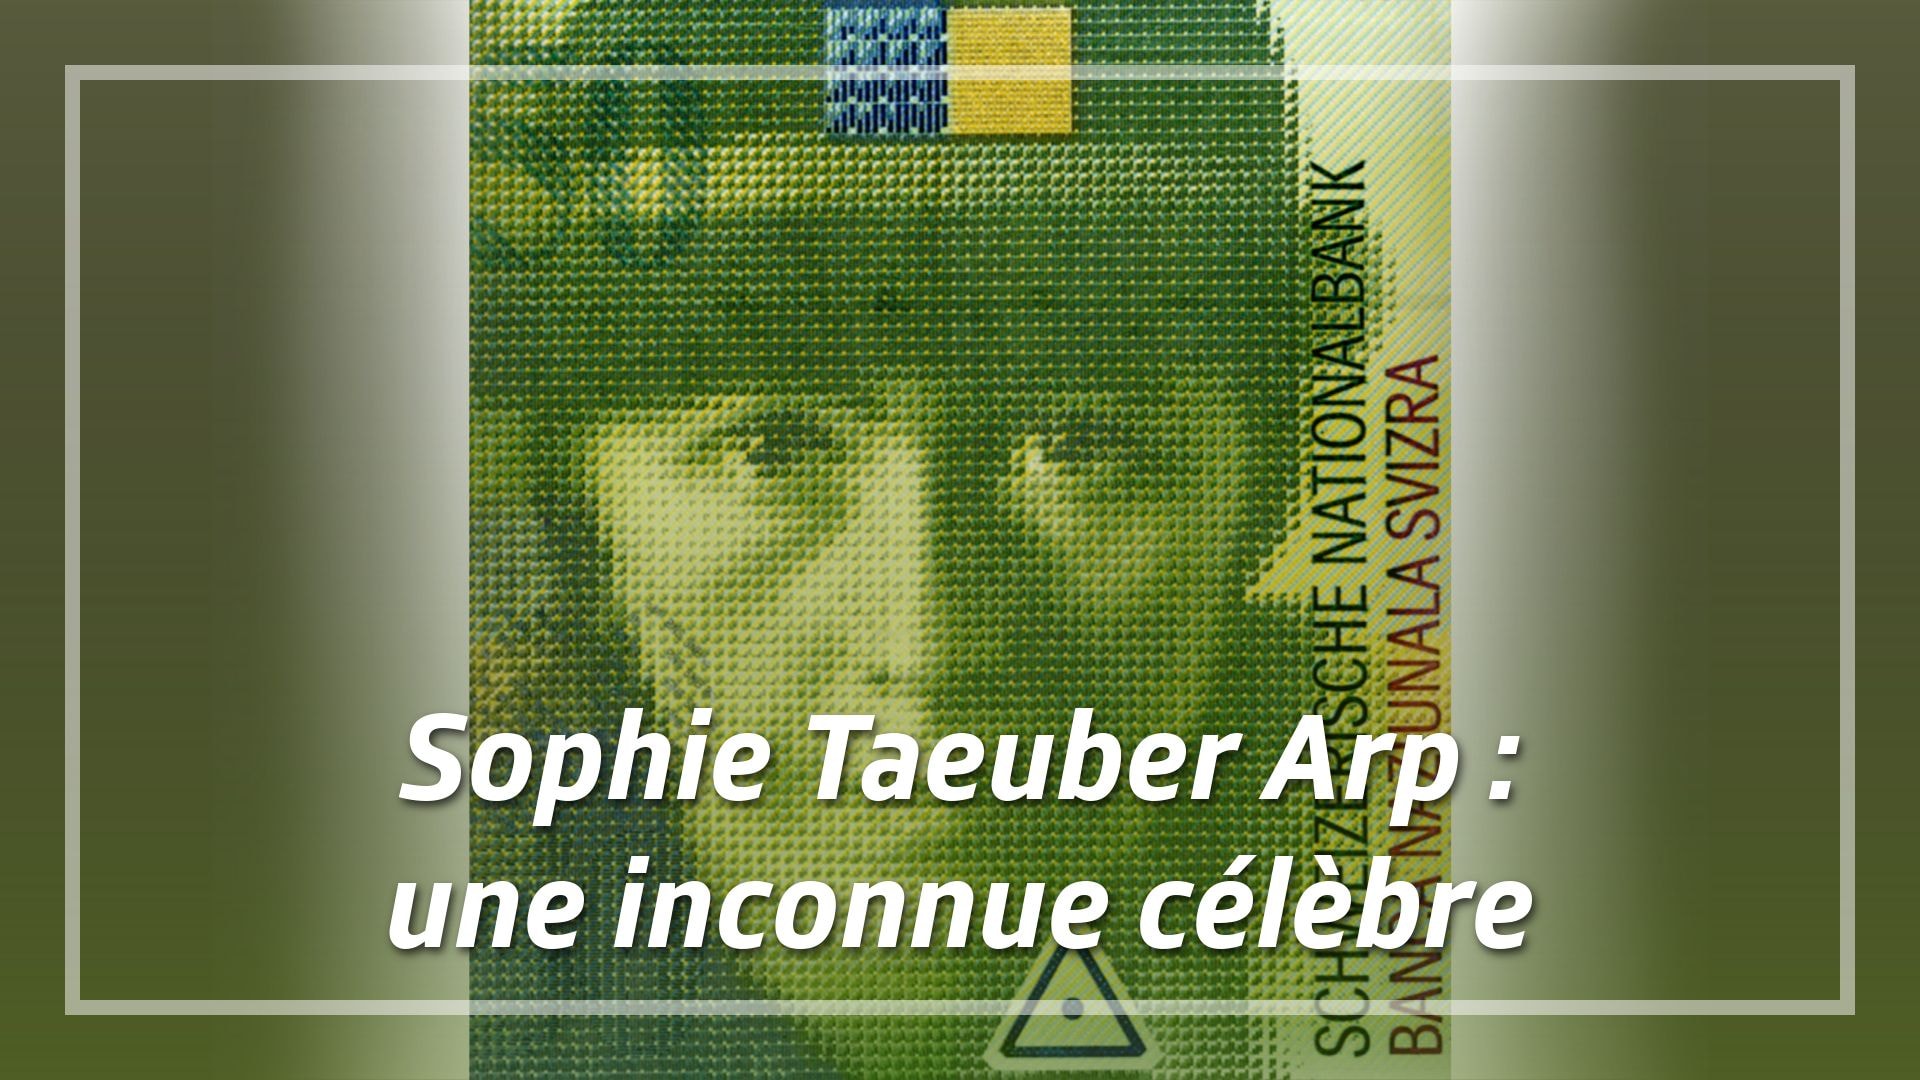 Sophie Taeuber Arp : une inconnue célèbre